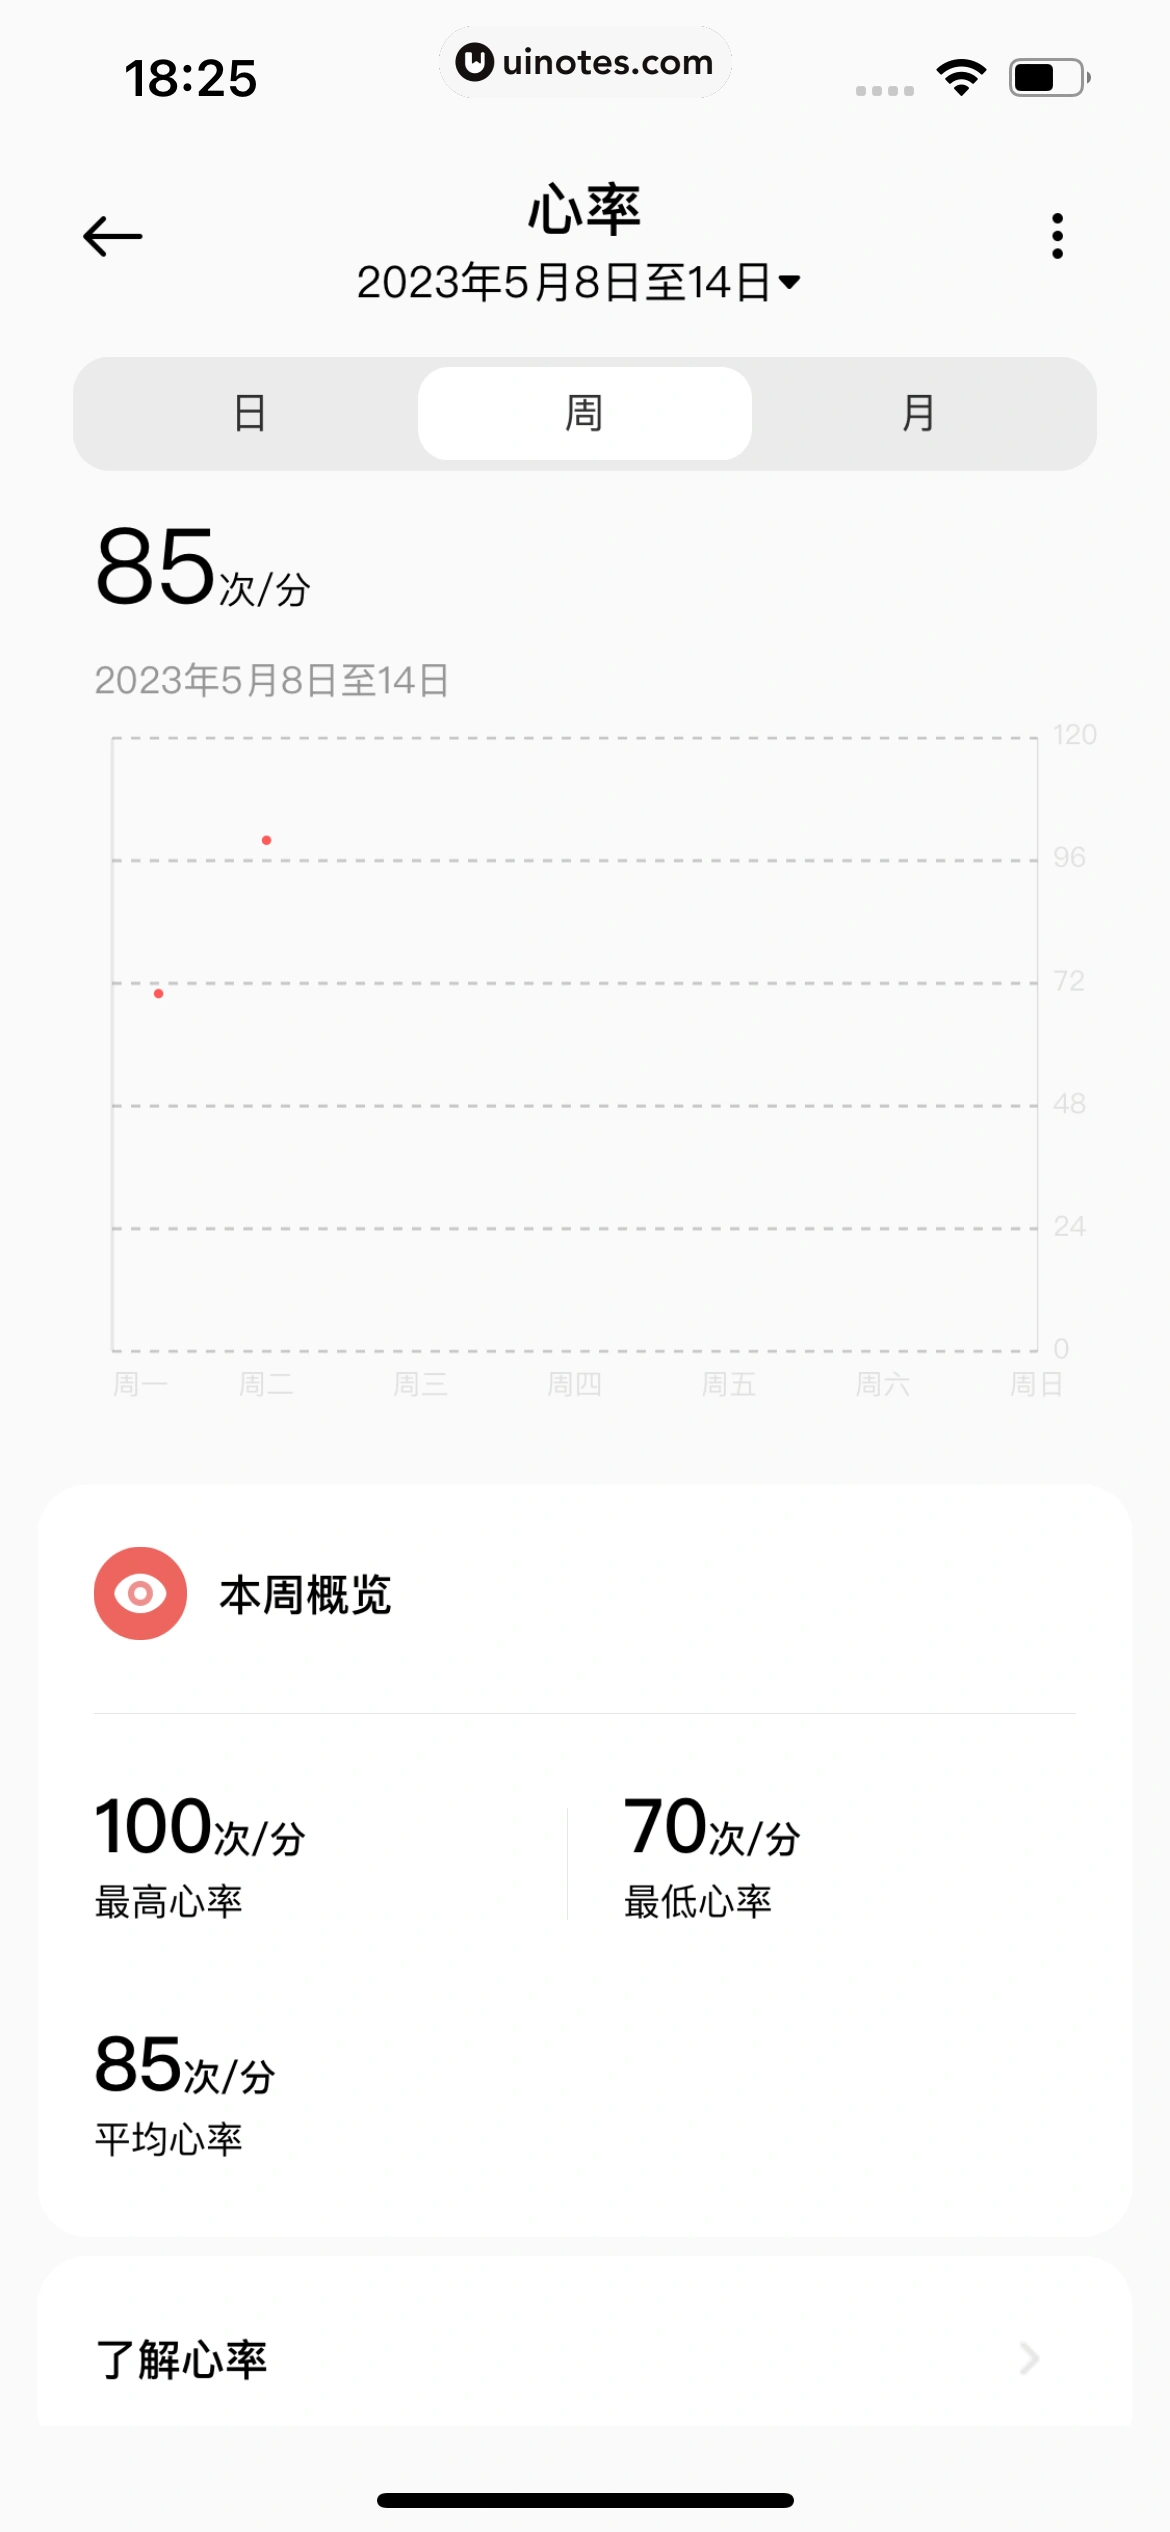 小米运动健康 App 截图 081 - UI Notes